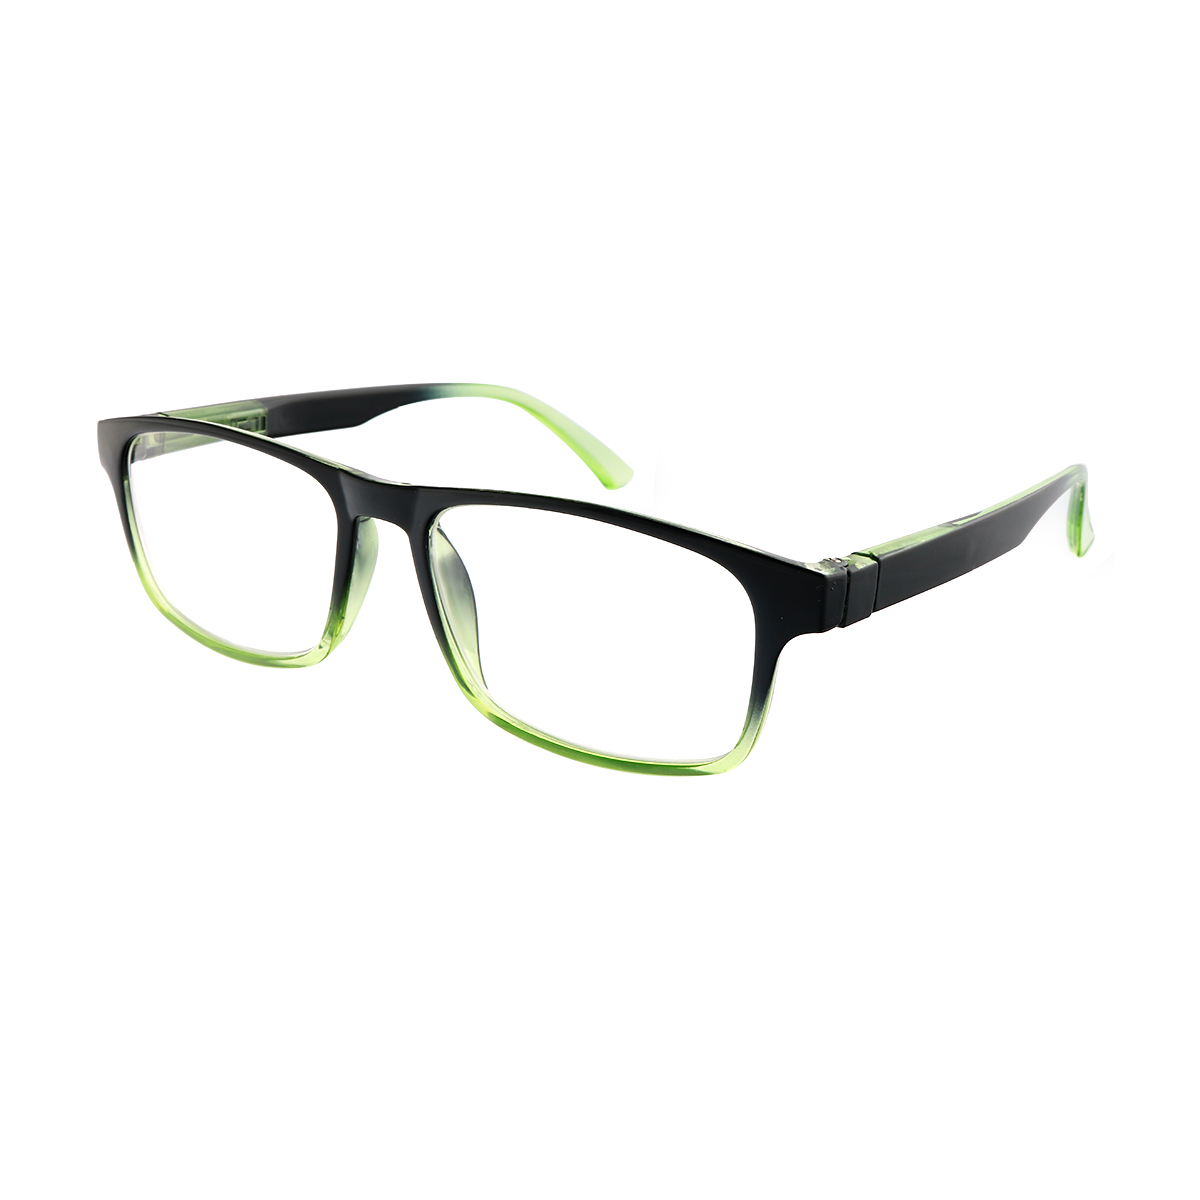 Solon - Rectangle Green Reading Glasses for Men & Women